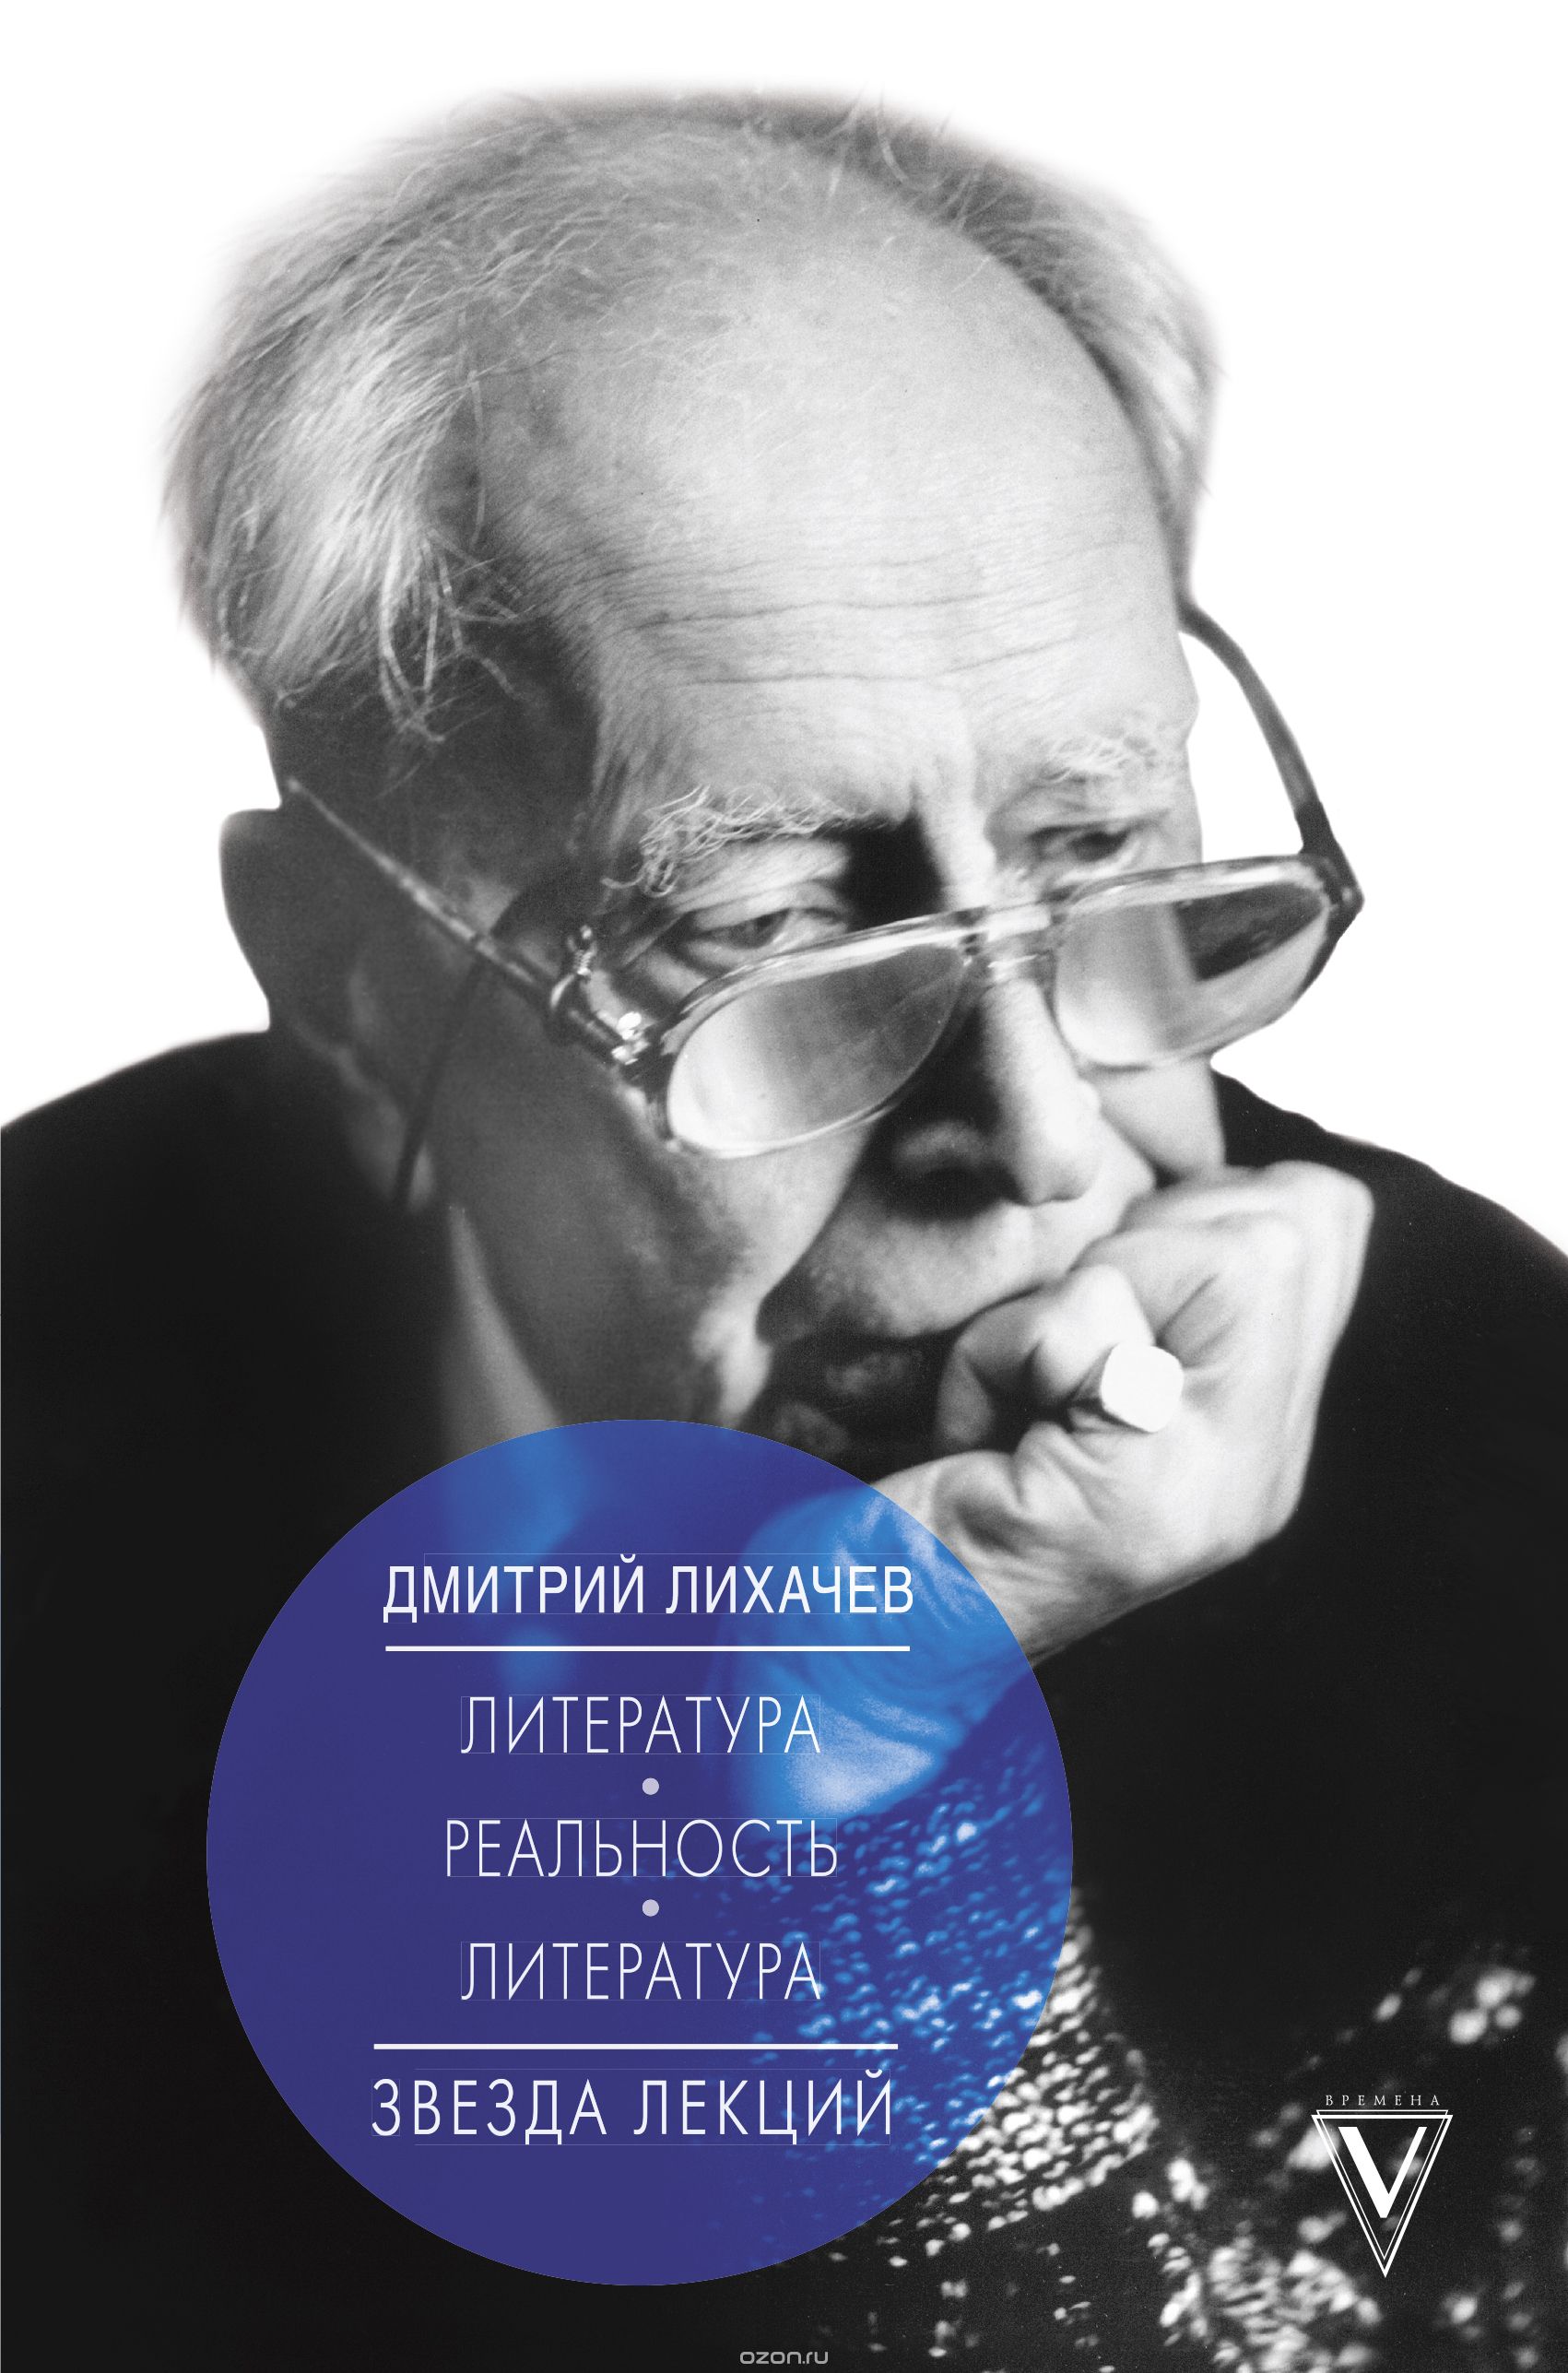 Литература - реальность - литература, Дмитрий Лихачев